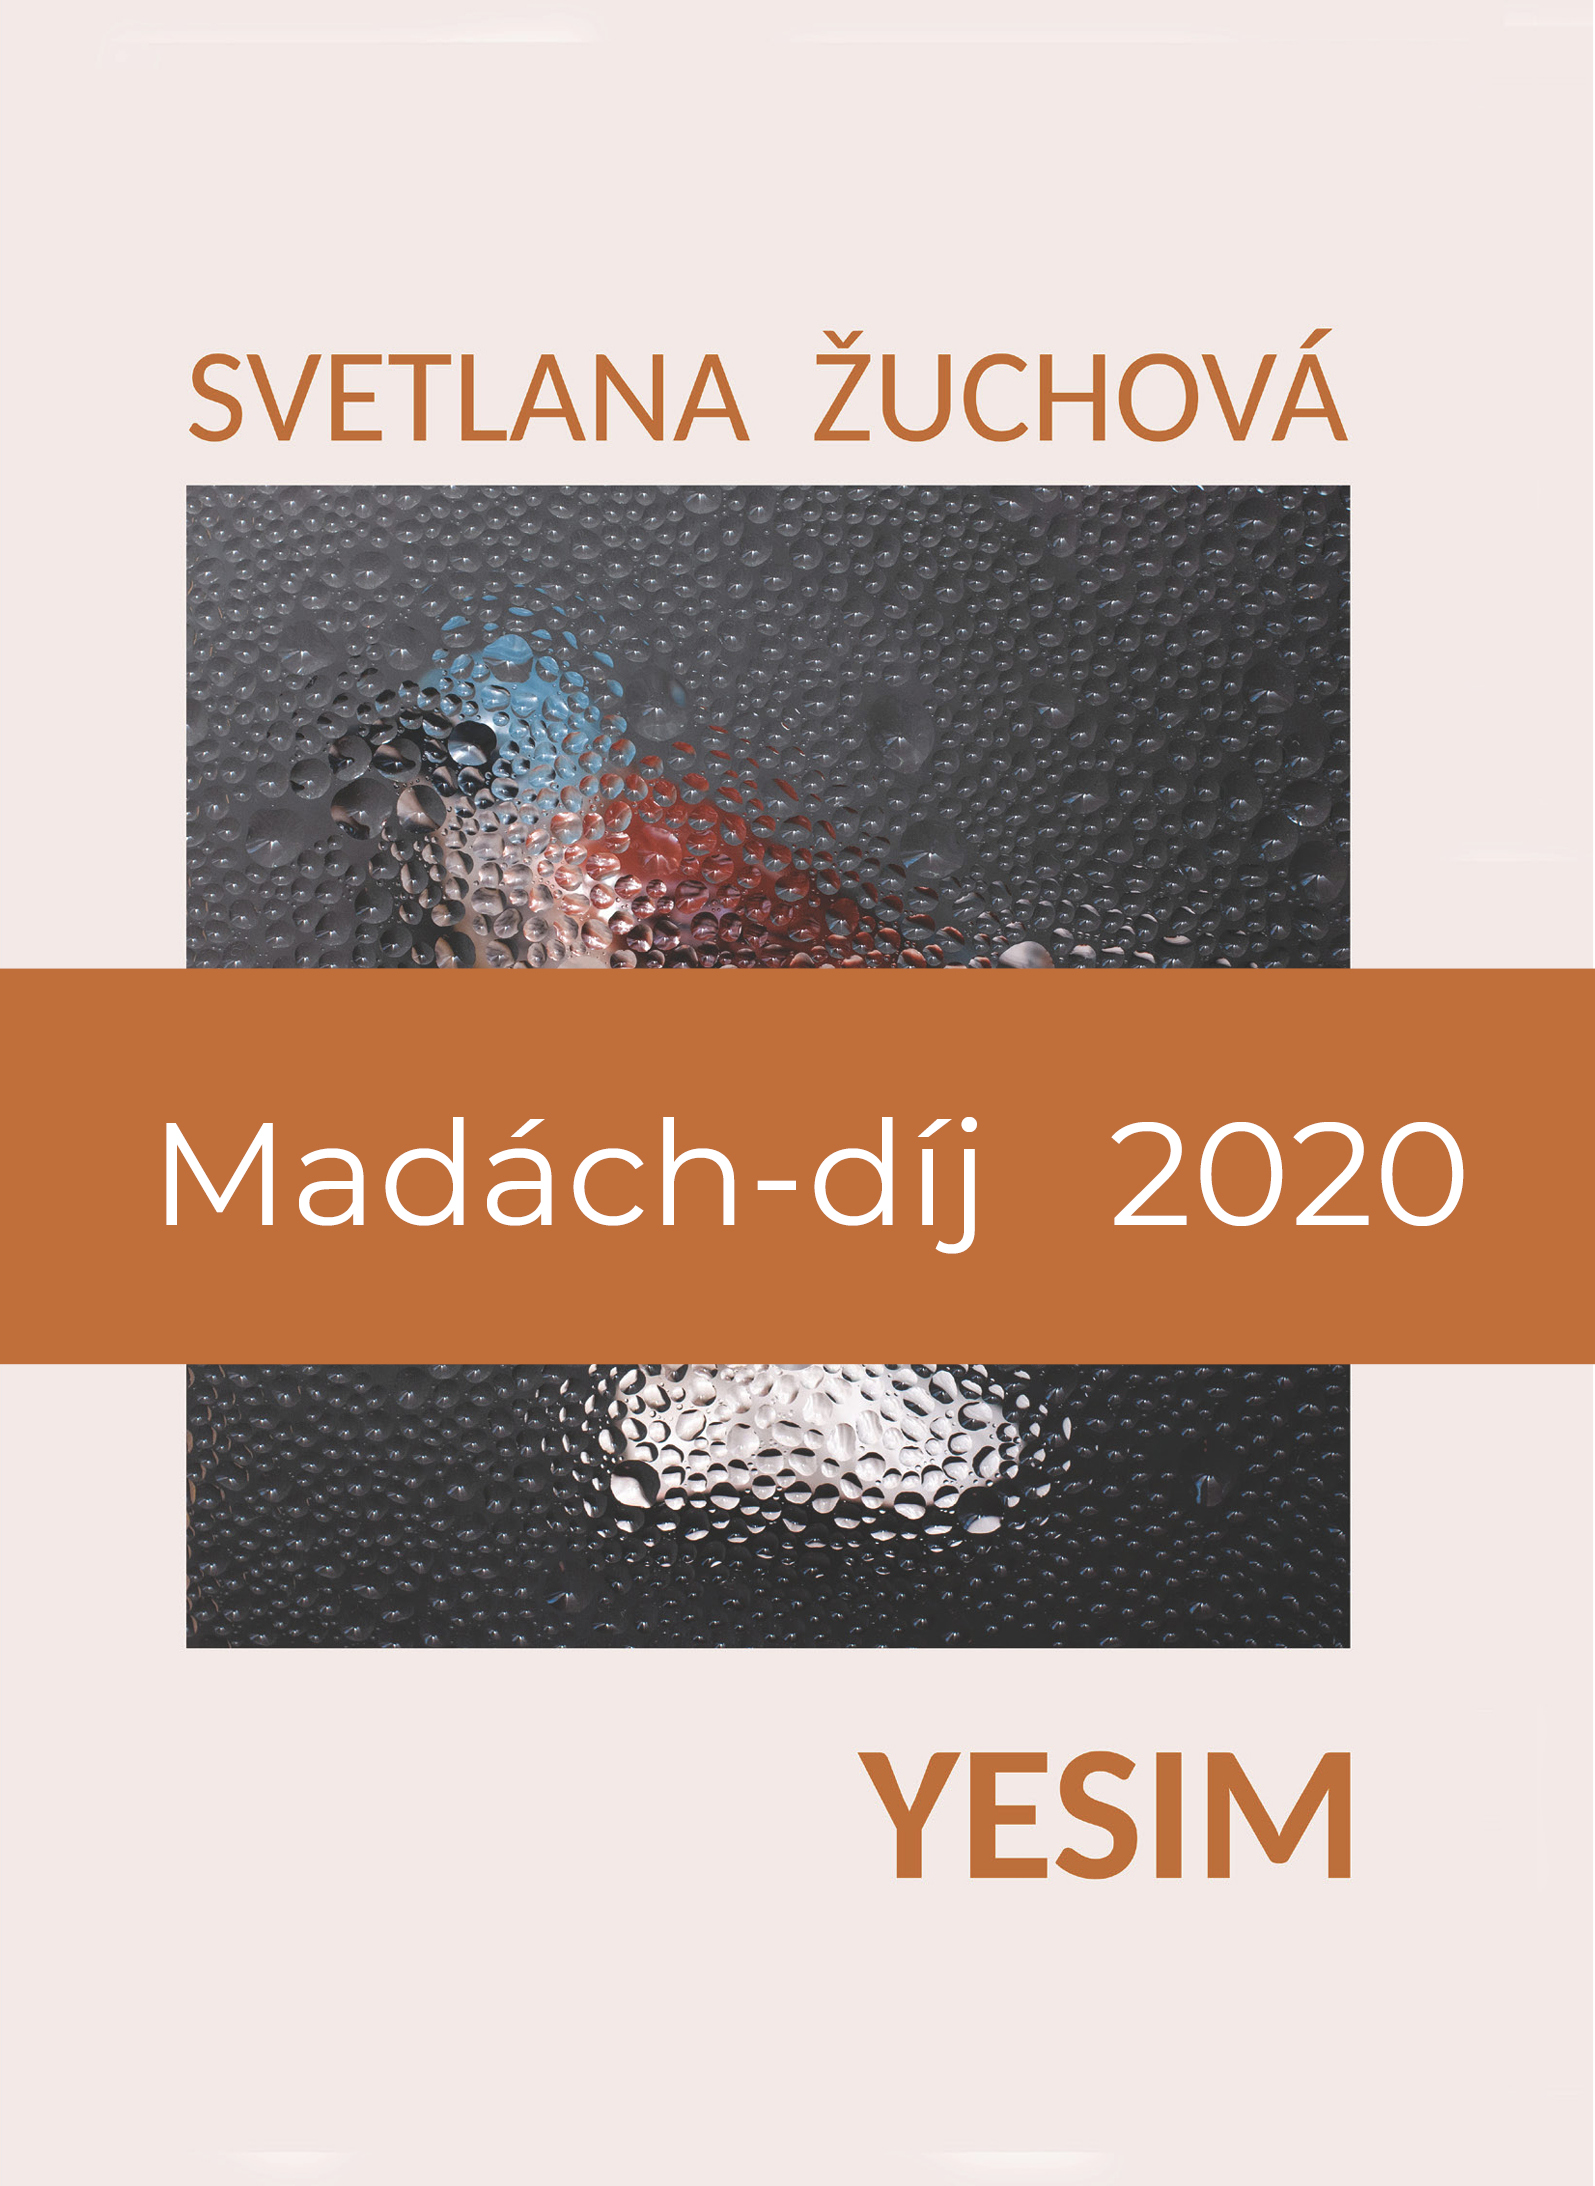 svetlana žuchová yesim madách-díj 2020 e-book